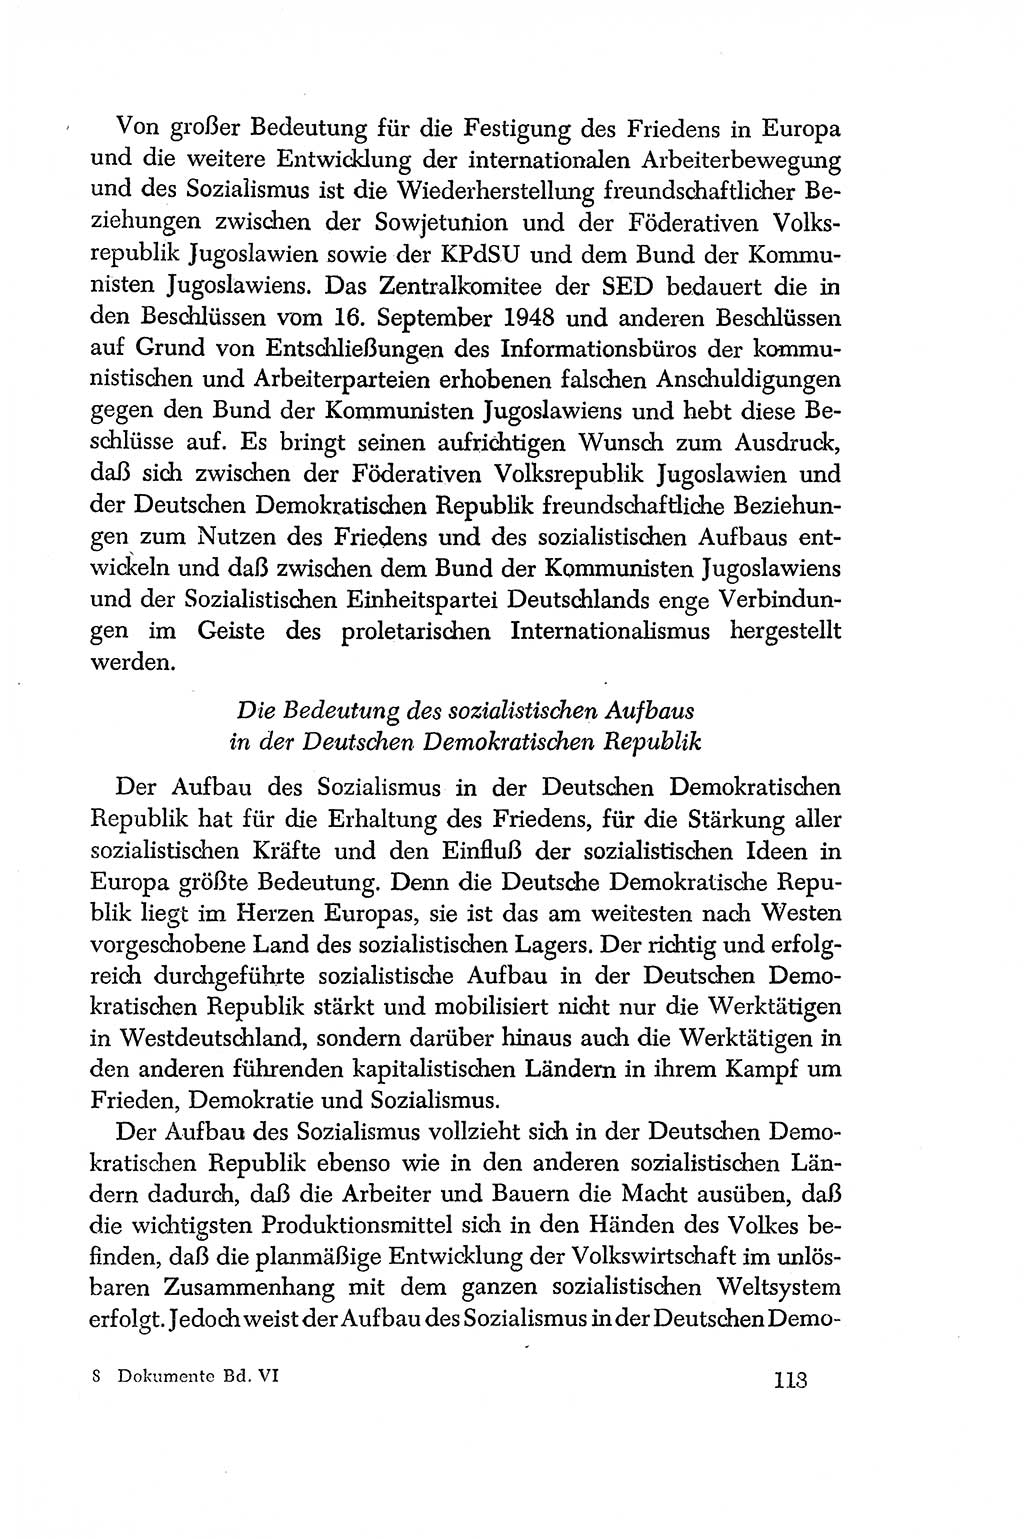 Dokumente der Sozialistischen Einheitspartei Deutschlands (SED) [Deutsche Demokratische Republik (DDR)] 1956-1957, Seite 113 (Dok. SED DDR 1956-1957, S. 113)